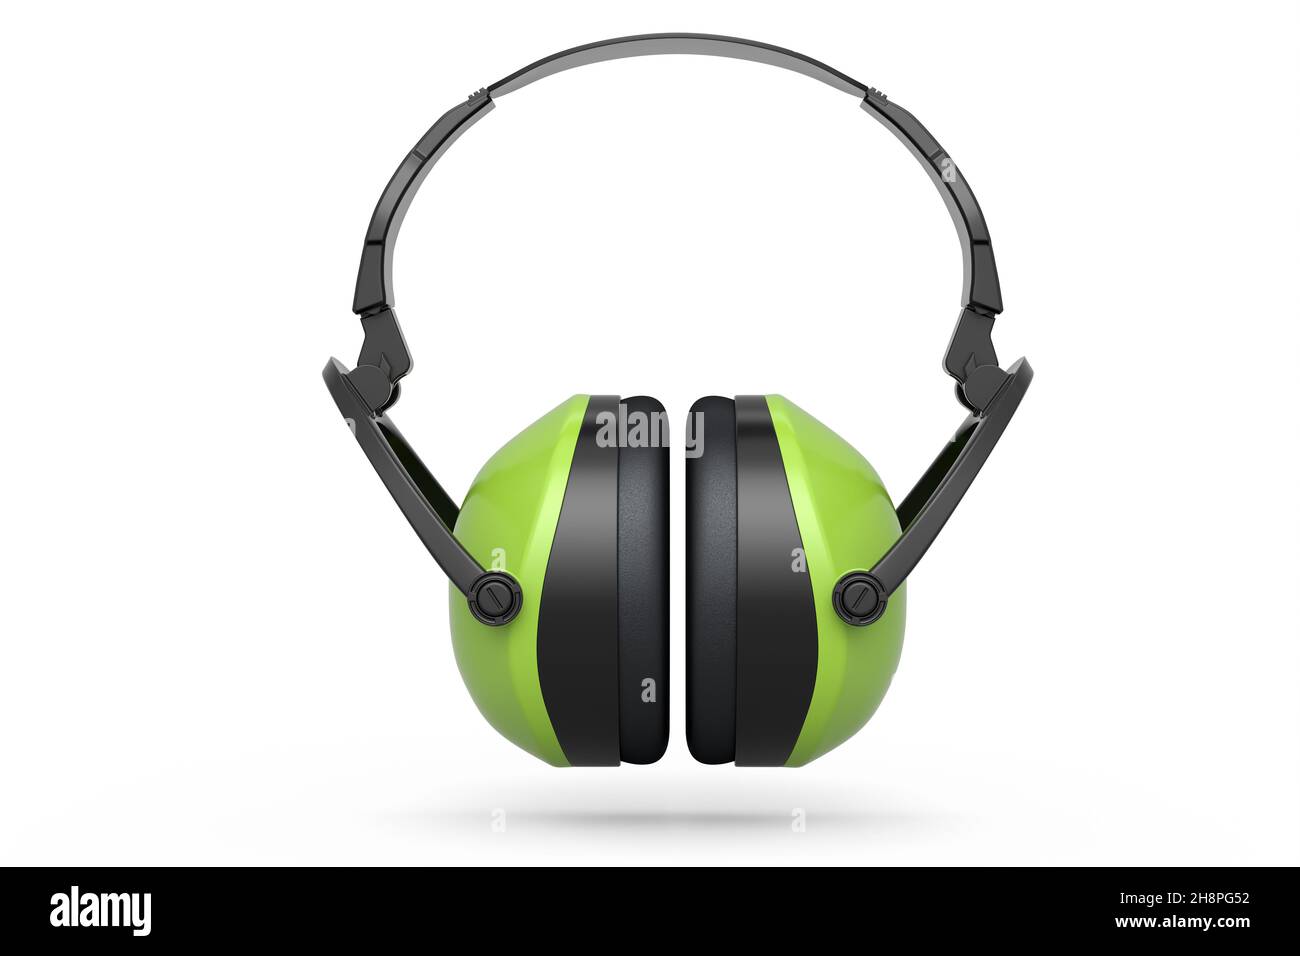 Protectores auriculares verdes cascos aislados sobre un fondo blanco. 3d renderización e ilustración de la herramienta para reparación y construcción Foto de stock